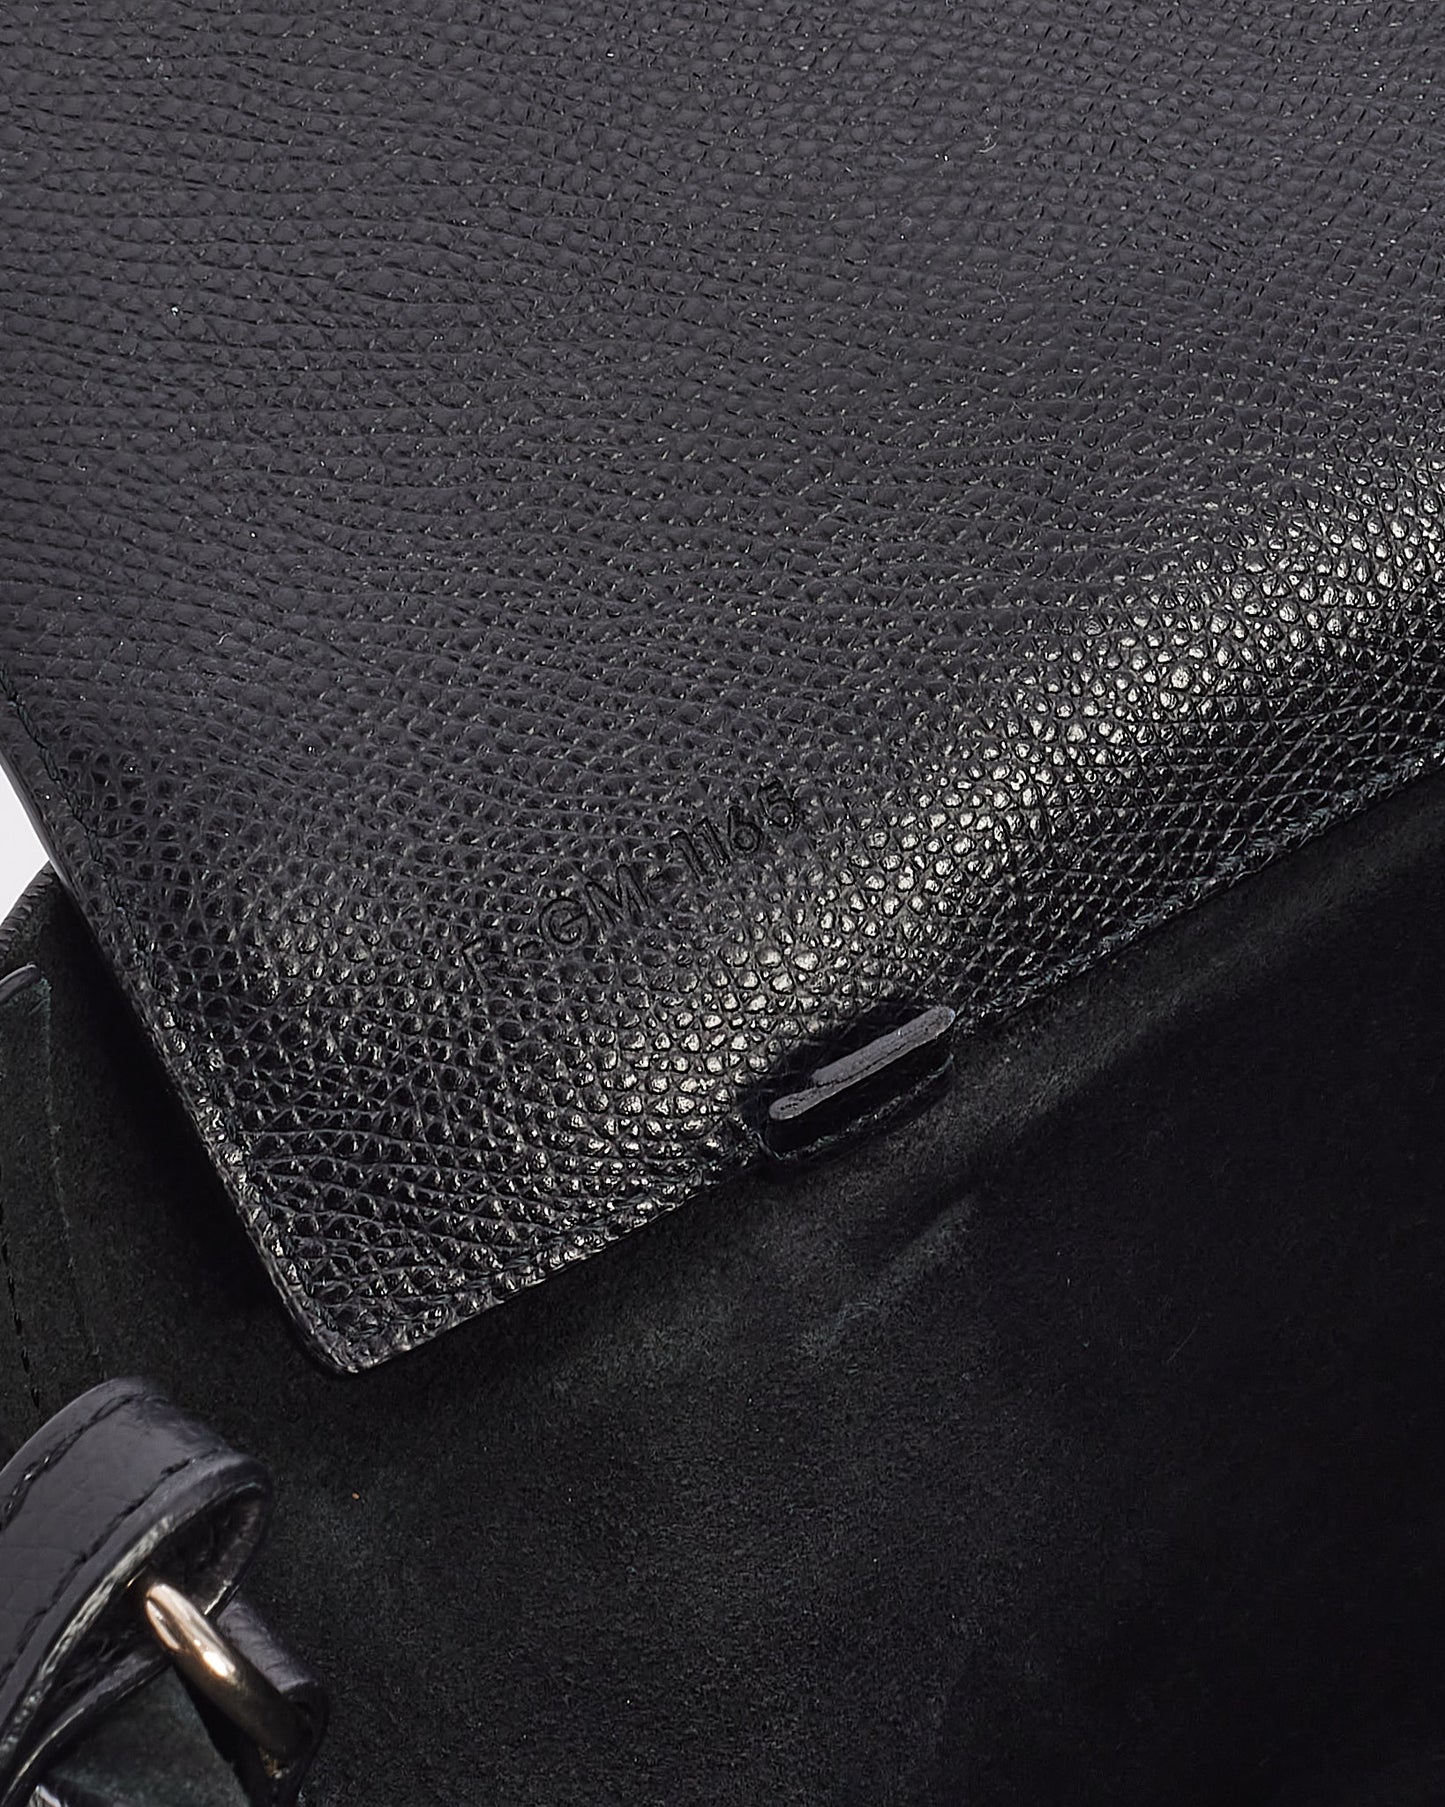 Celine Black Leather Cabas PM Tote Bag with Shoulder Strap